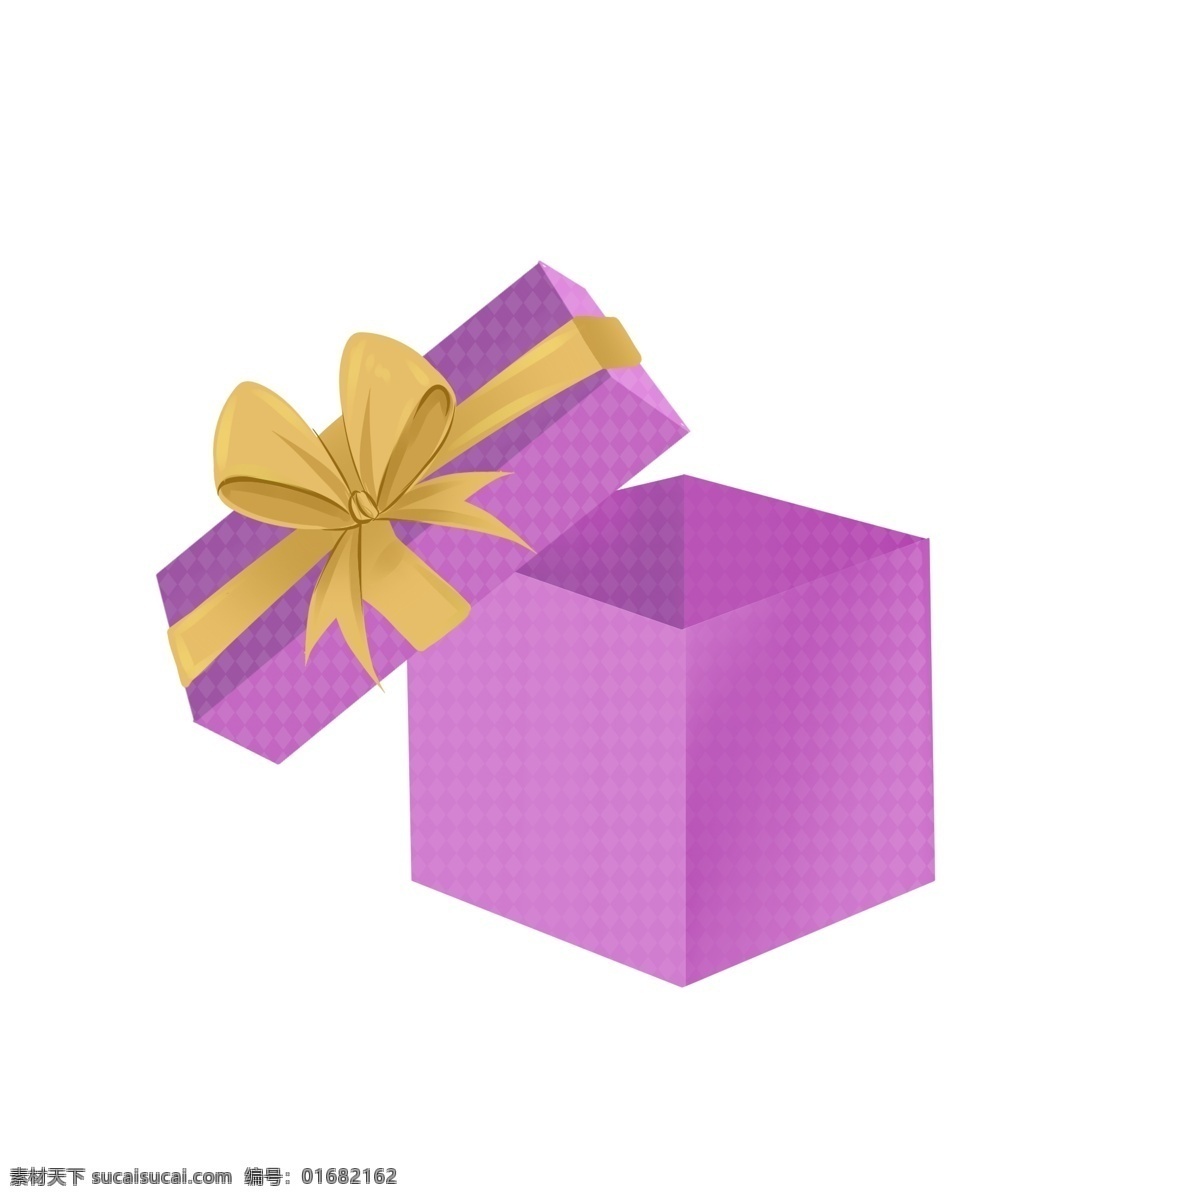 彩色 礼品盒 手绘 图案 免 扣 彩色礼盒 粉紫色礼盒 黄色丝带 蝴蝶结 可爱 底纹 卡通 小清新 免扣 温馨 惊喜